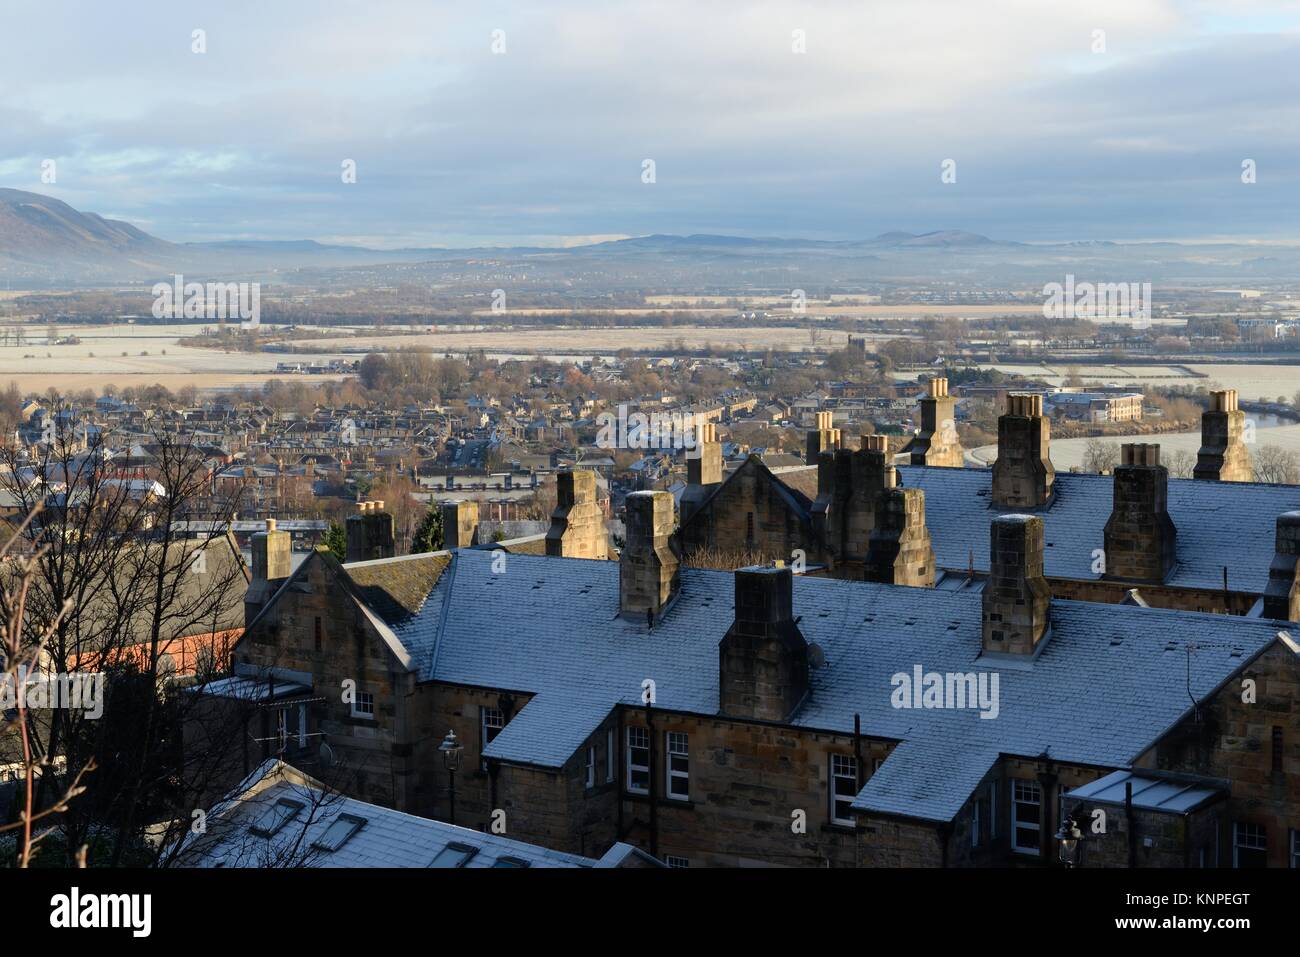 Frosty donnant sur le toits de la vieille ville de Stirling, Ecosse centrale de la ville, rivière Forth et de plaine ci-dessous. Banque D'Images